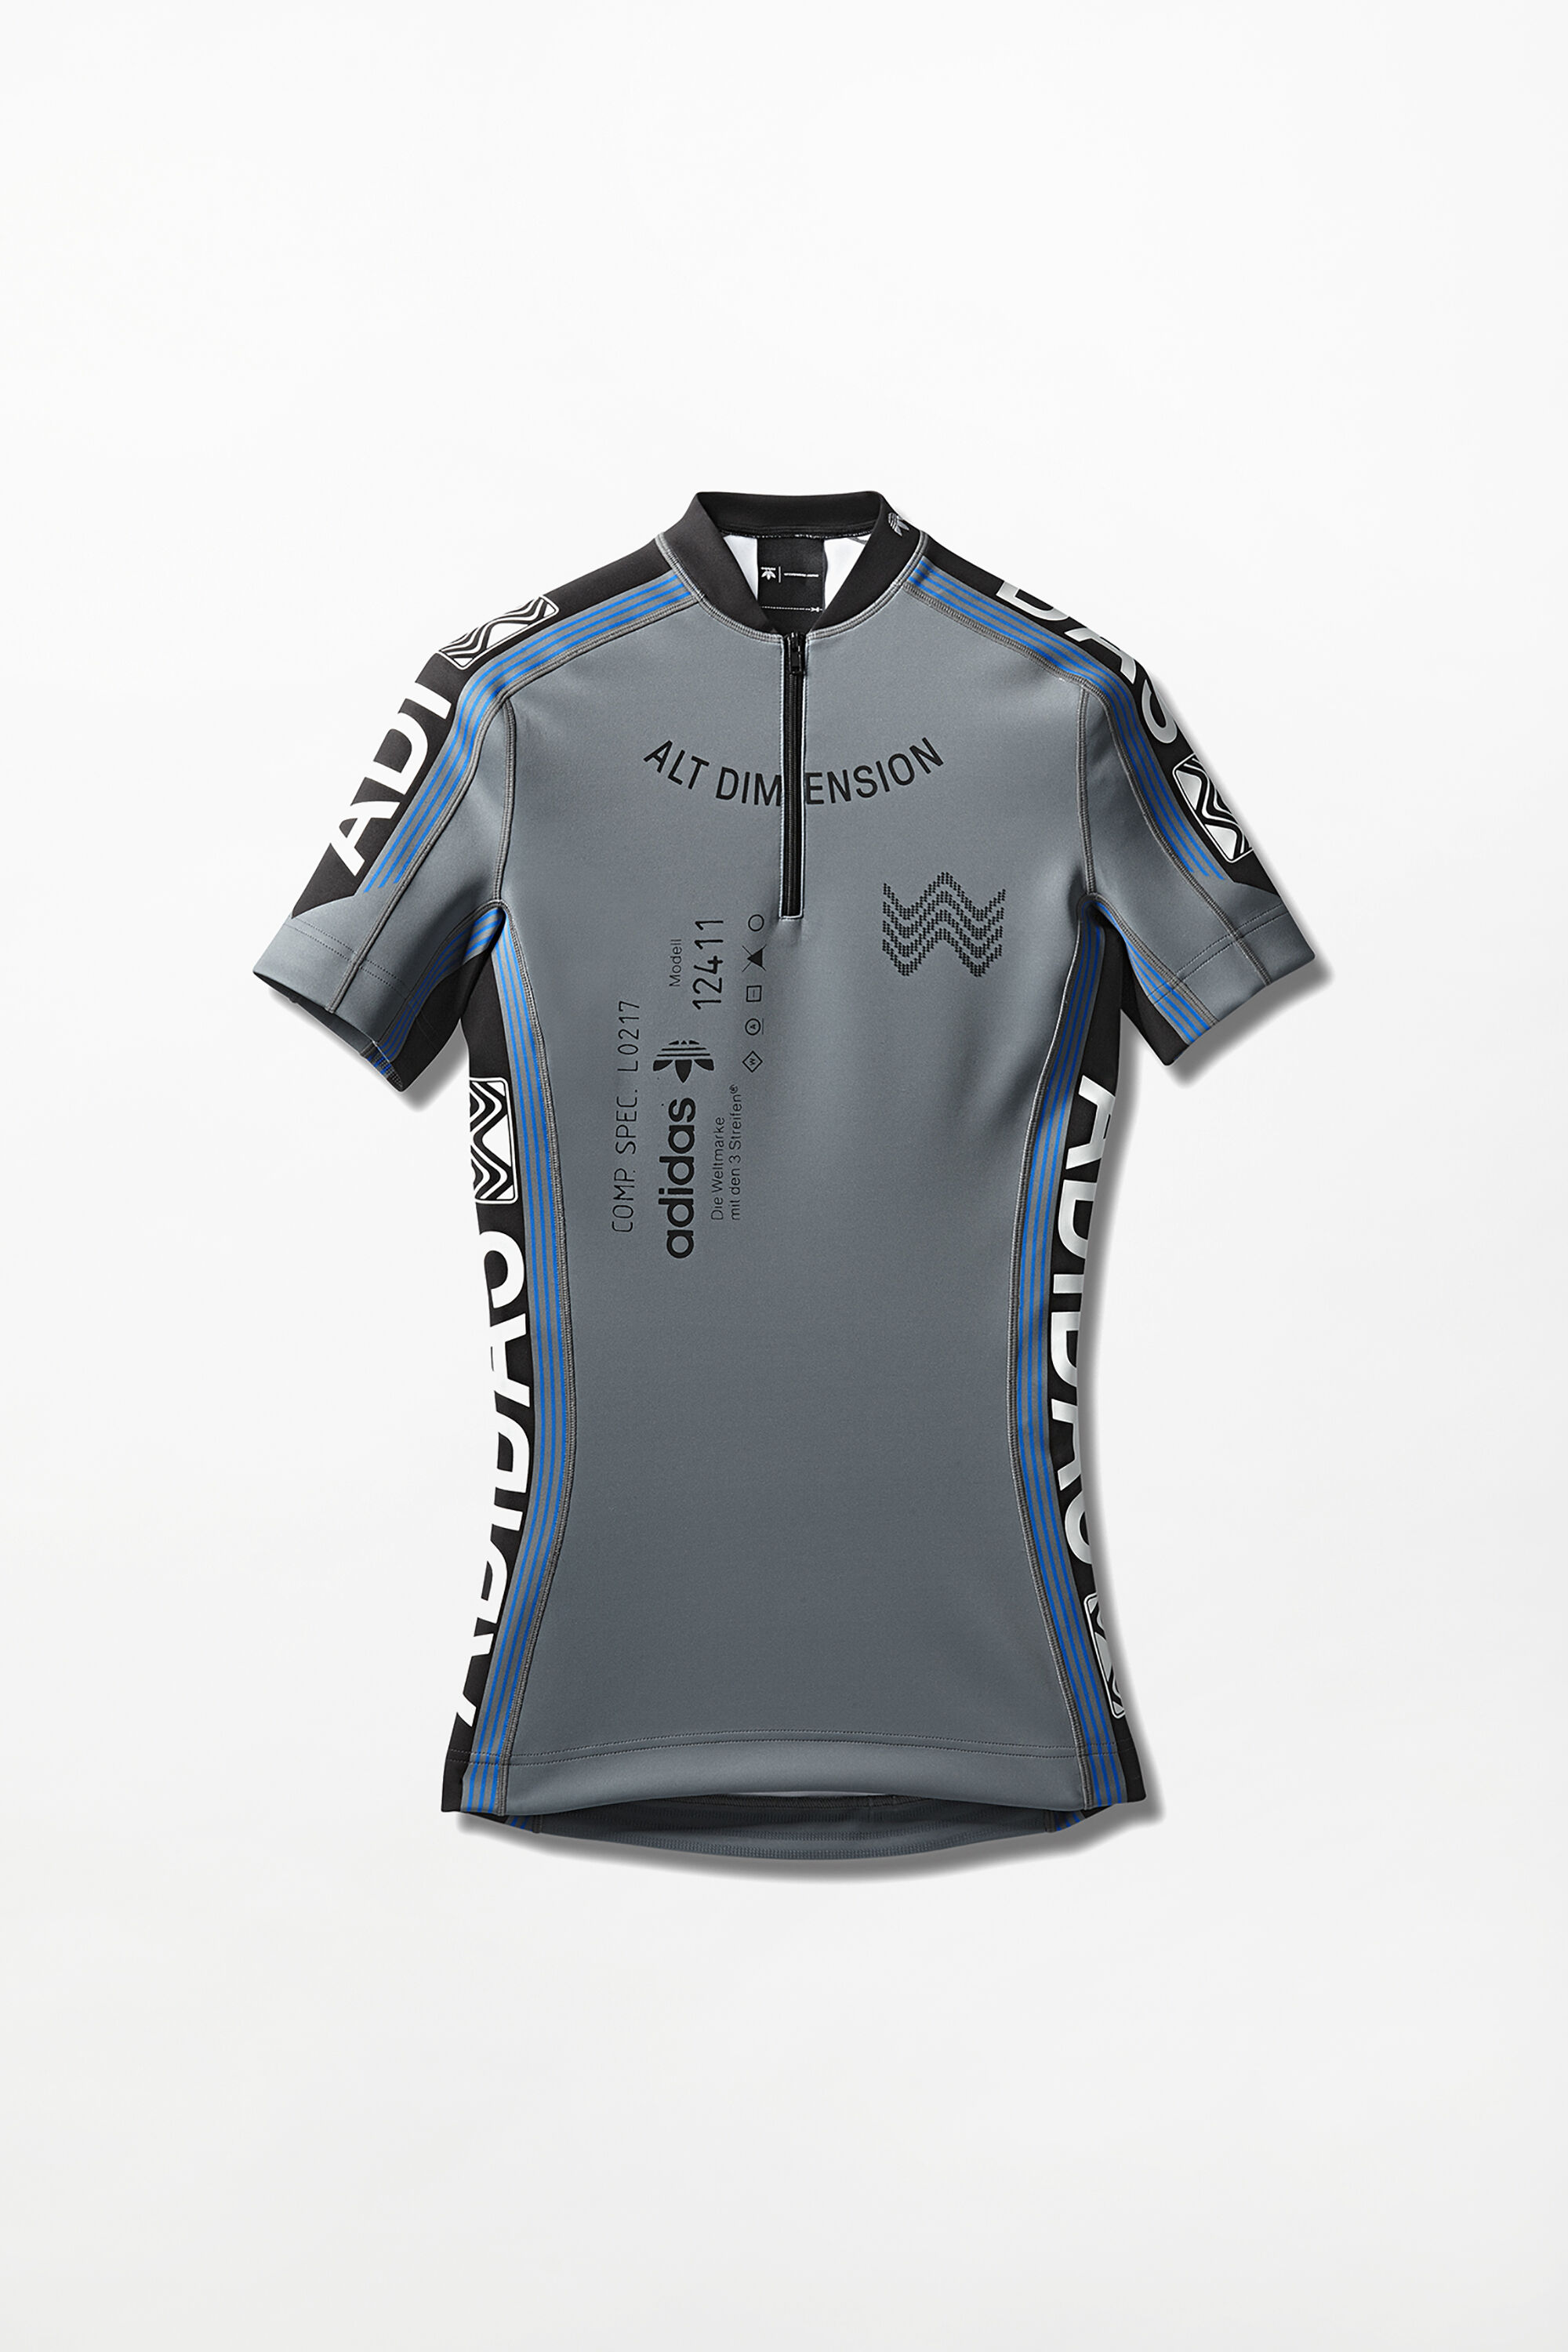 adidas cycling shirts